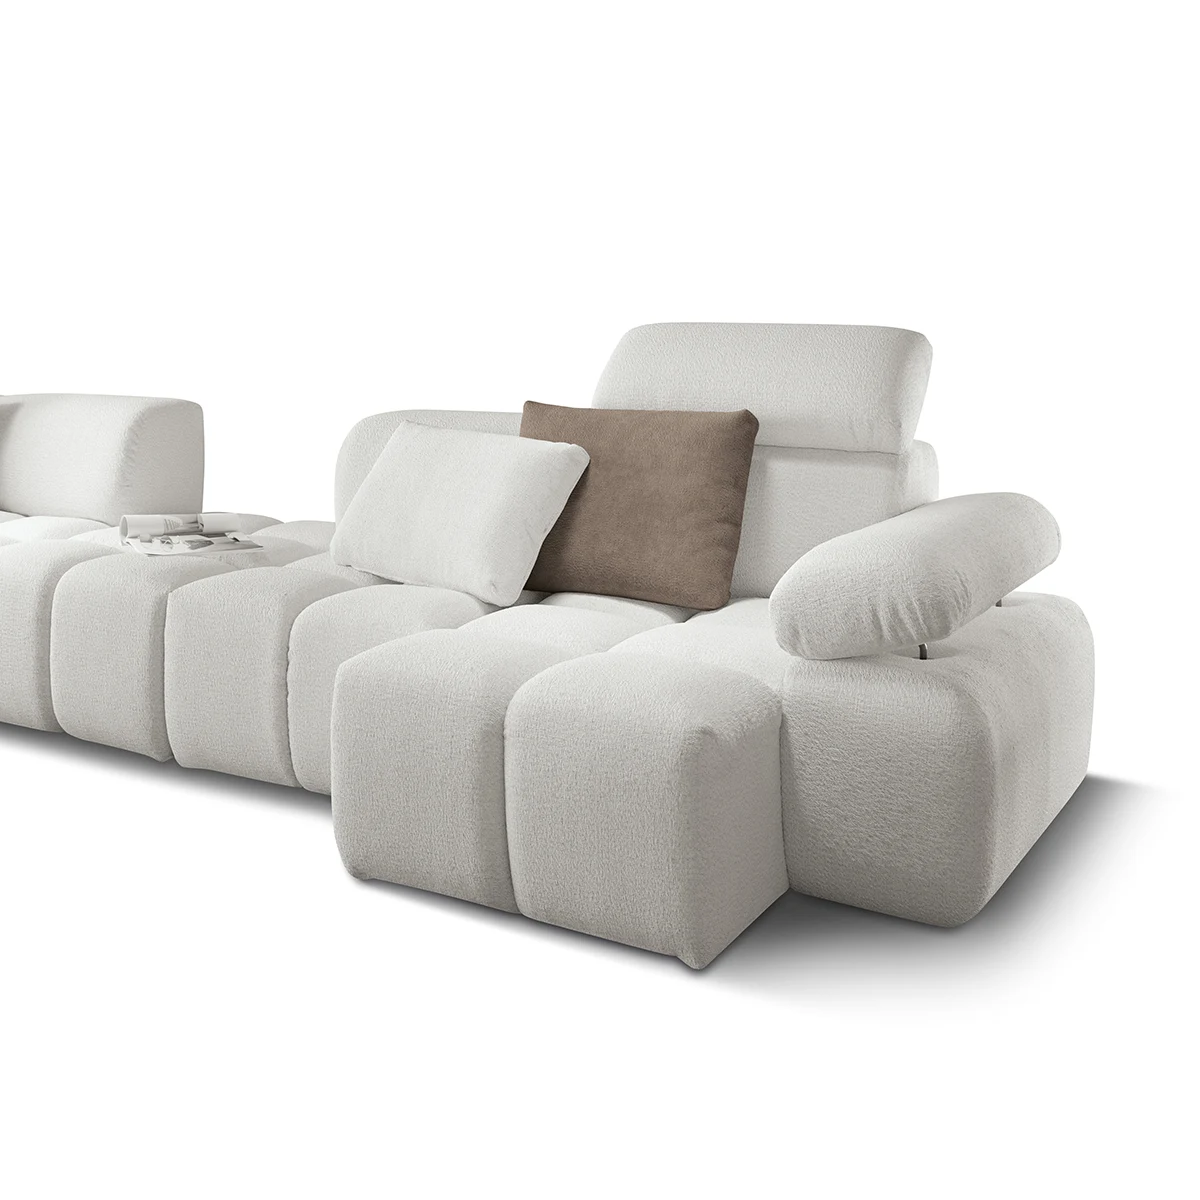 Soft divano modulare